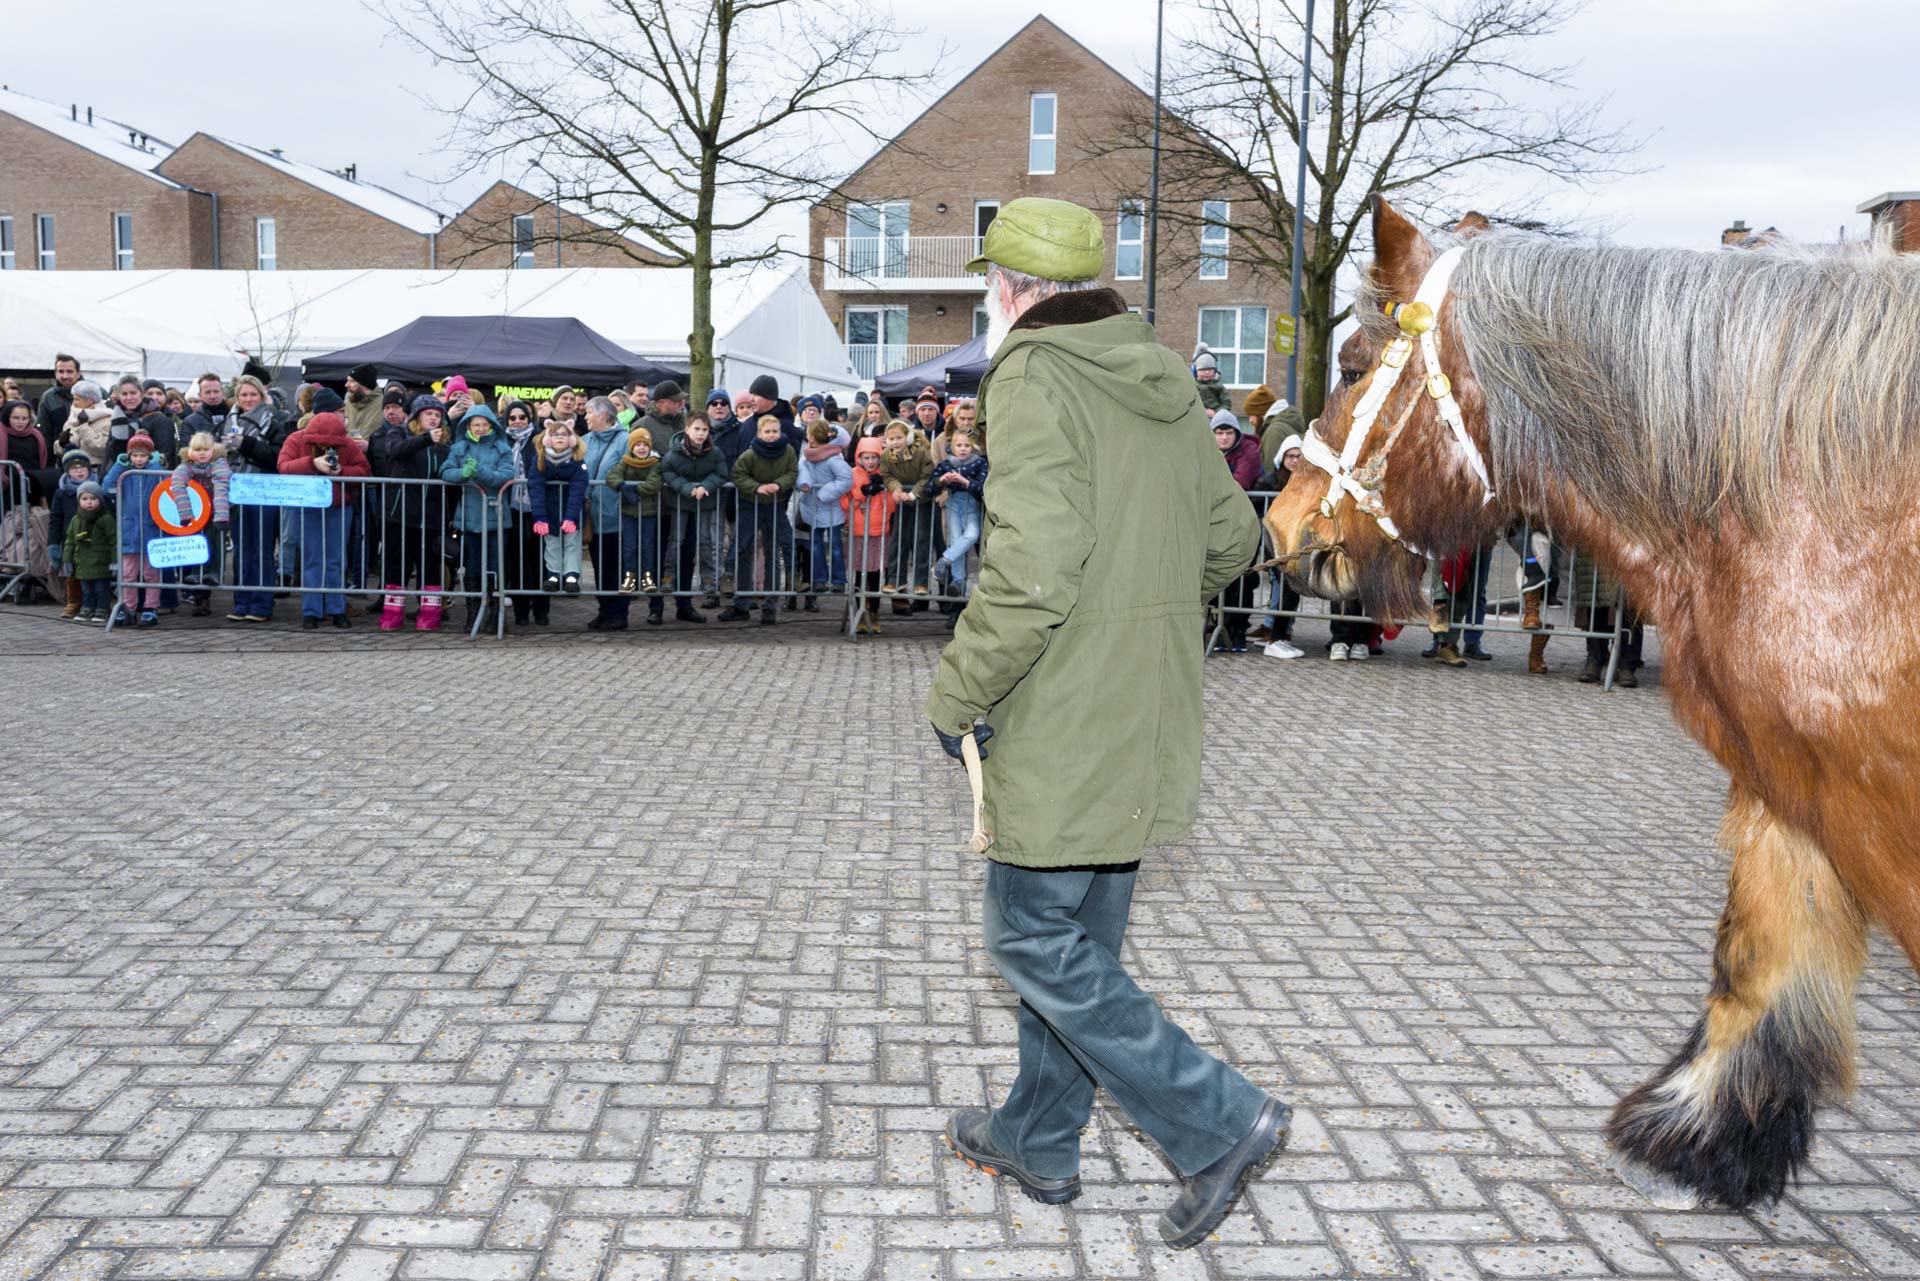 Sint Antonius viering Oosthoven (Oud-Turnhout, Belgie) | Sas Schilten Fotografie